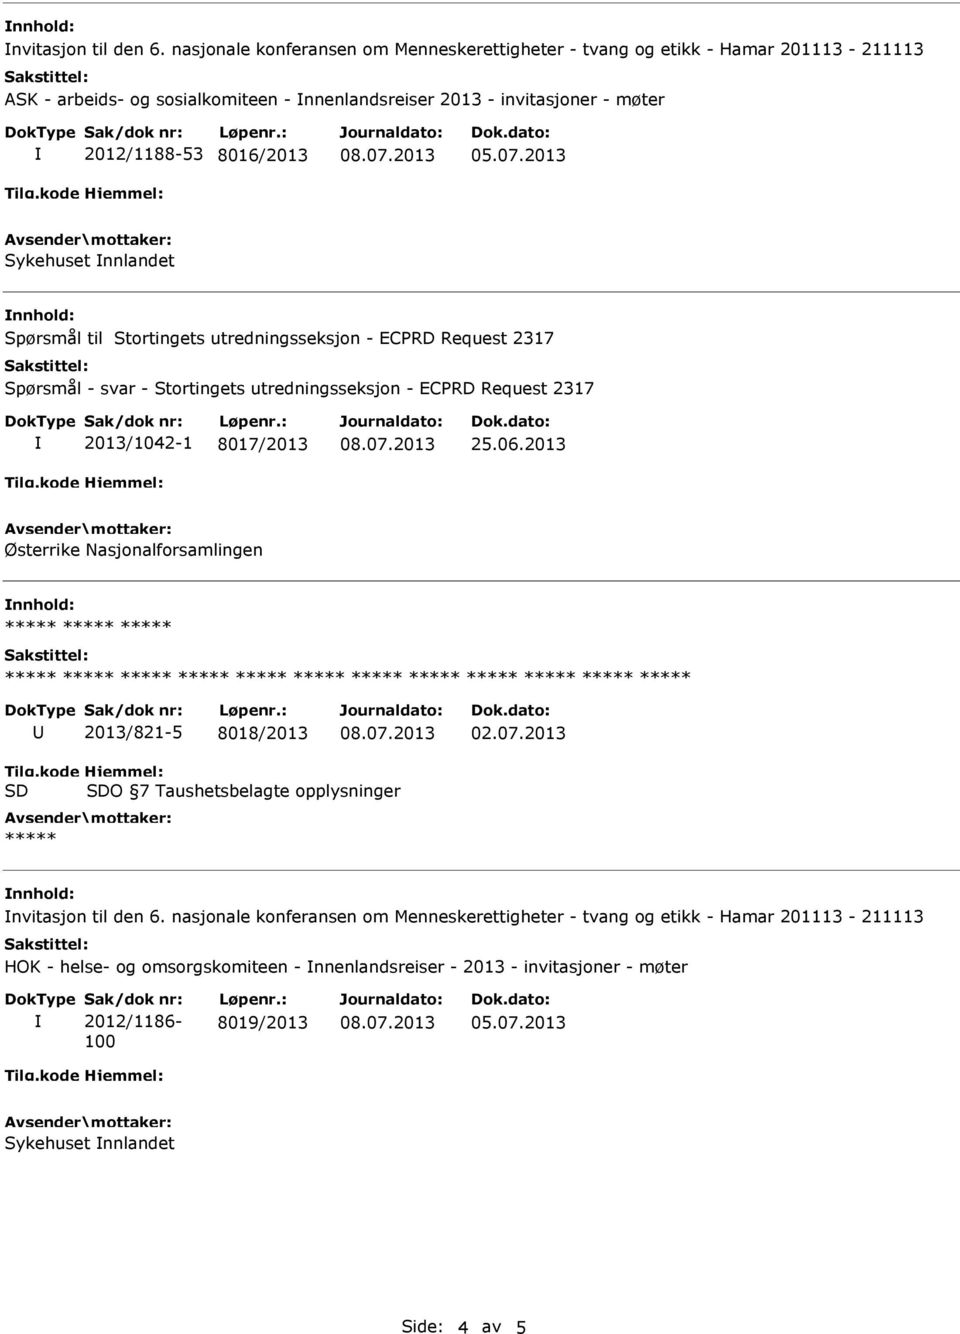 8016/2013 Sykehuset nnlandet Spørsmål til Stortingets utredningsseksjon - ECPRD Request 2317 Spørsmål - svar - Stortingets utredningsseksjon - ECPRD Request 2317 2013/1042-1